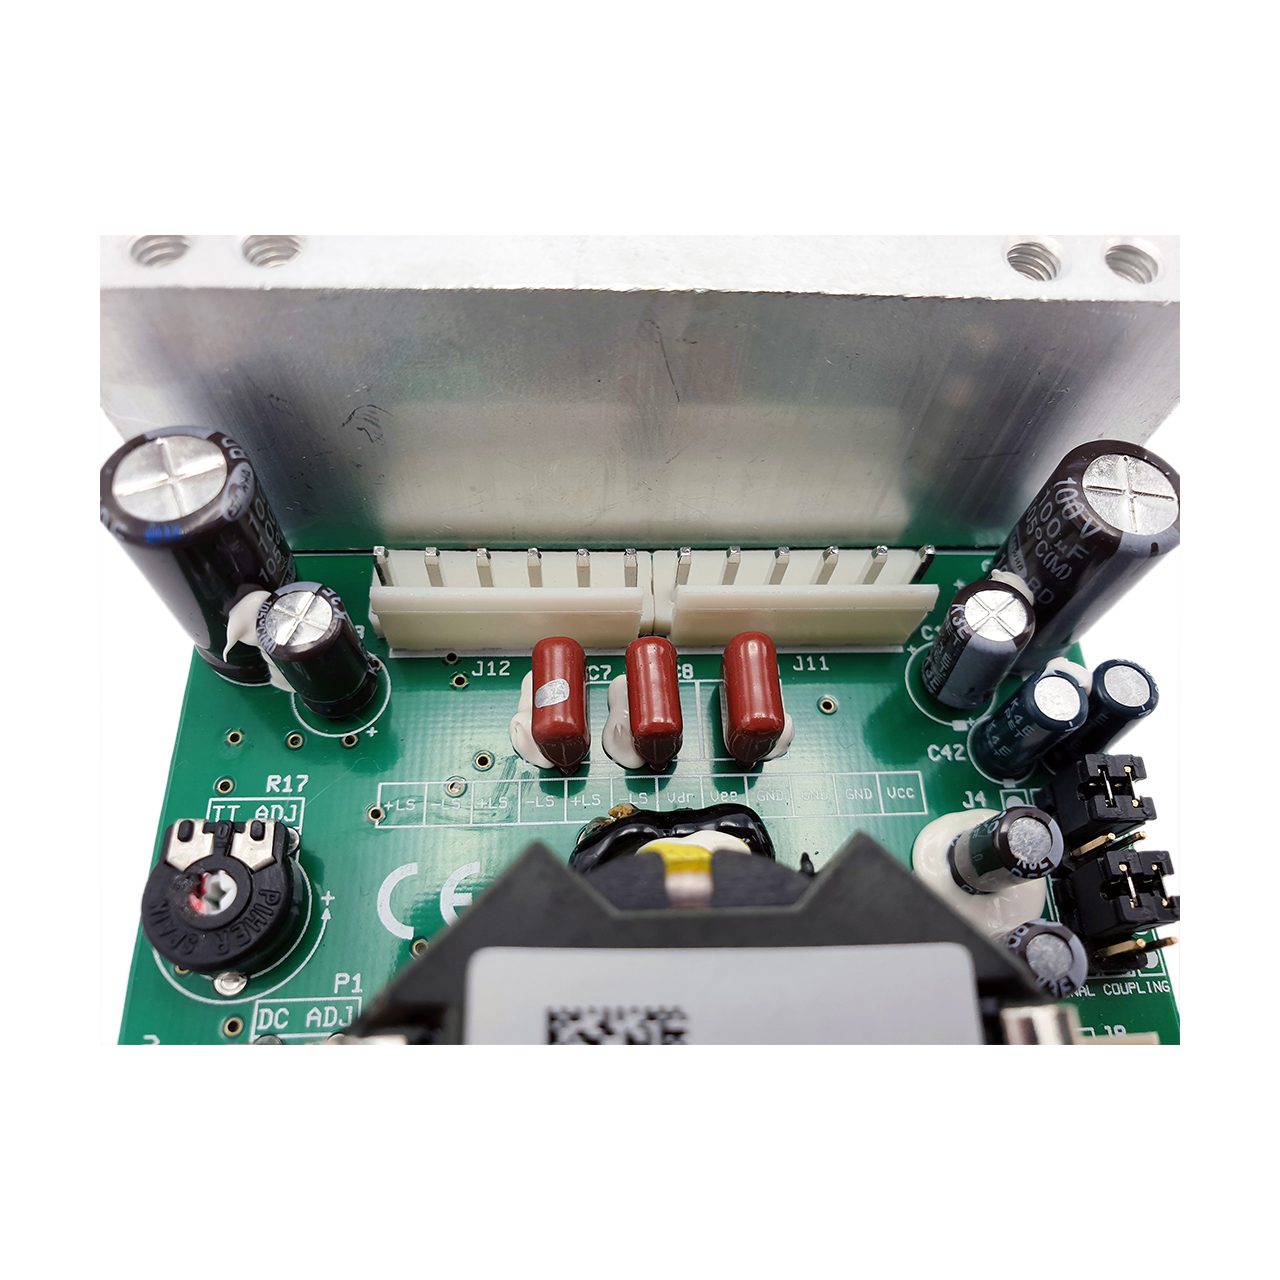 Hypex UcD™ 700LZ OEM amplifier module